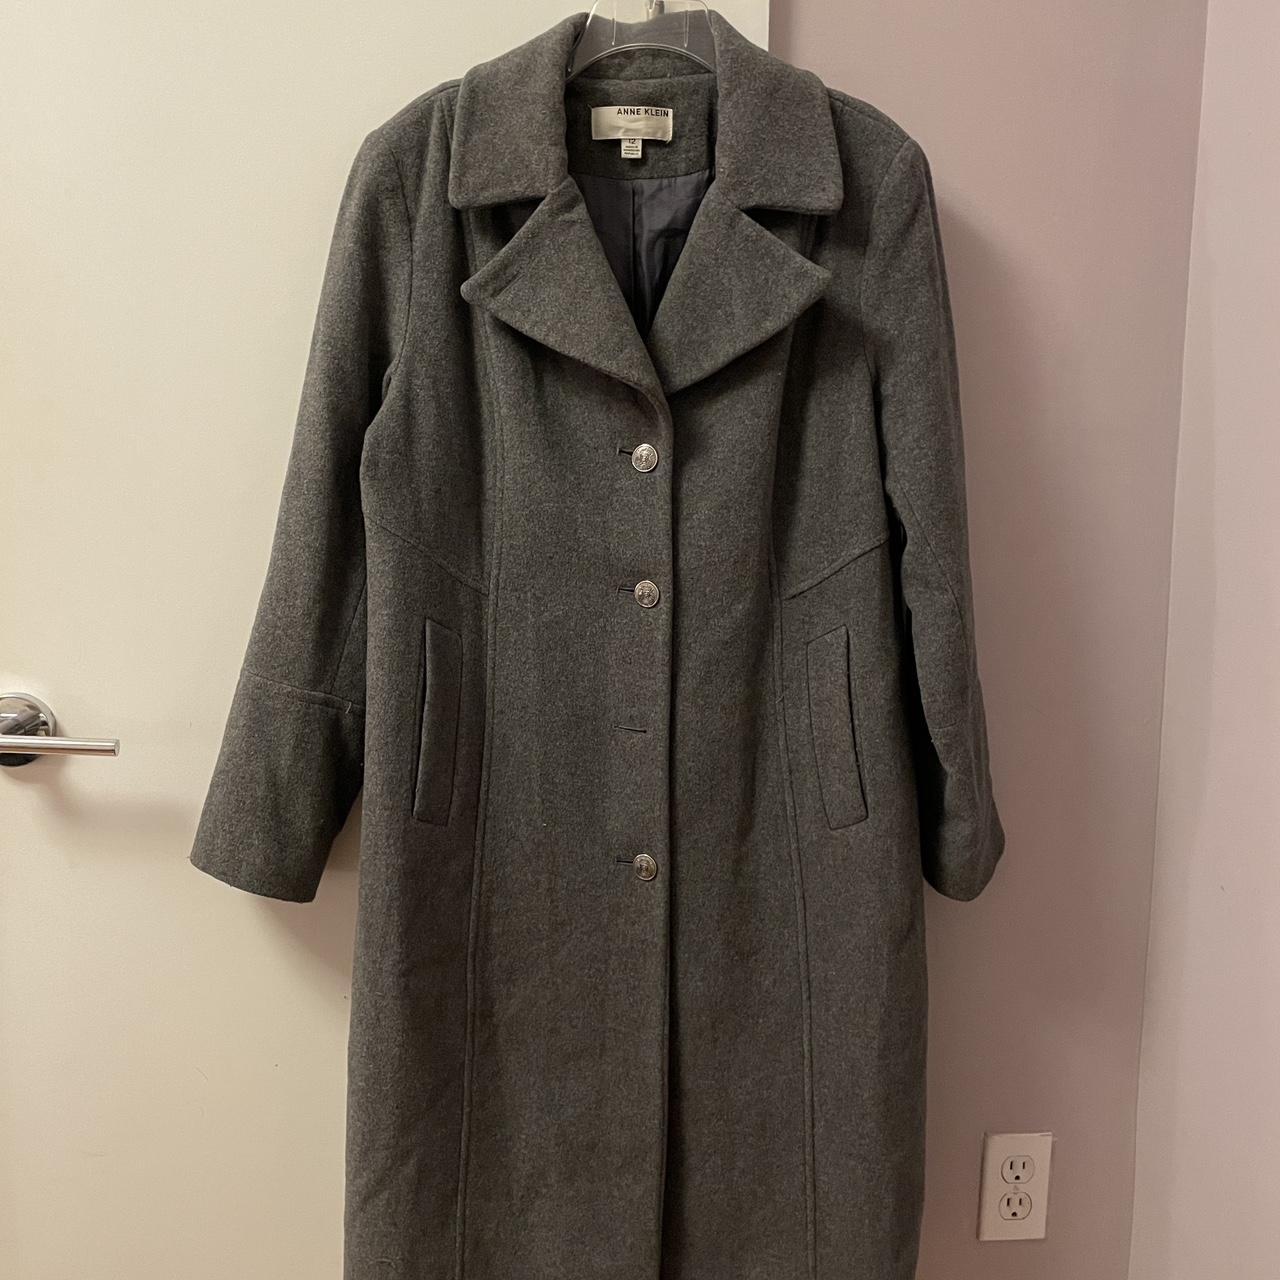 Grey vintage tailored wool/cashmere blend coat. Fits... - Depop